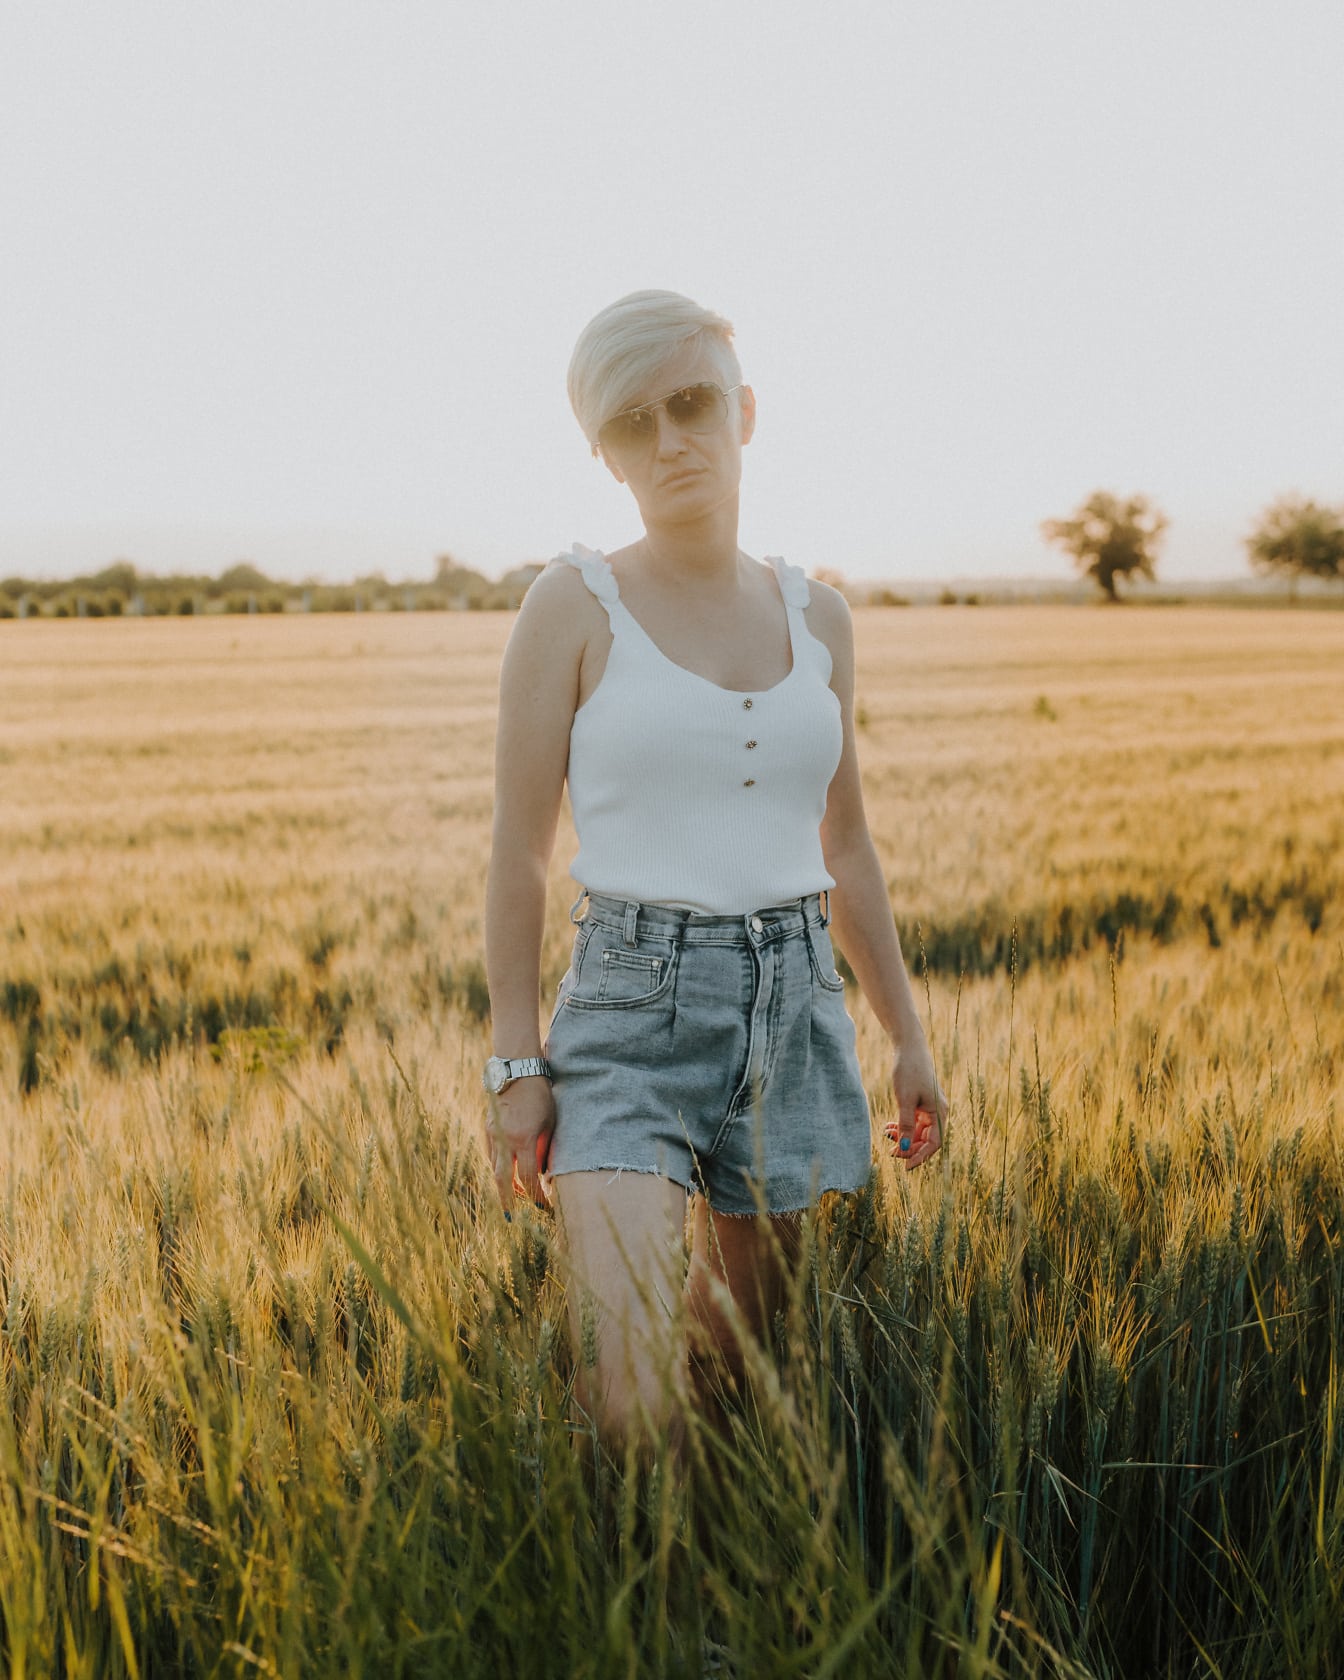 Lyhythiuksinen nainen farkuissa, shortseissa ja valkoisessa hihattomassa t-paidassa seisoo vehnäpellolla